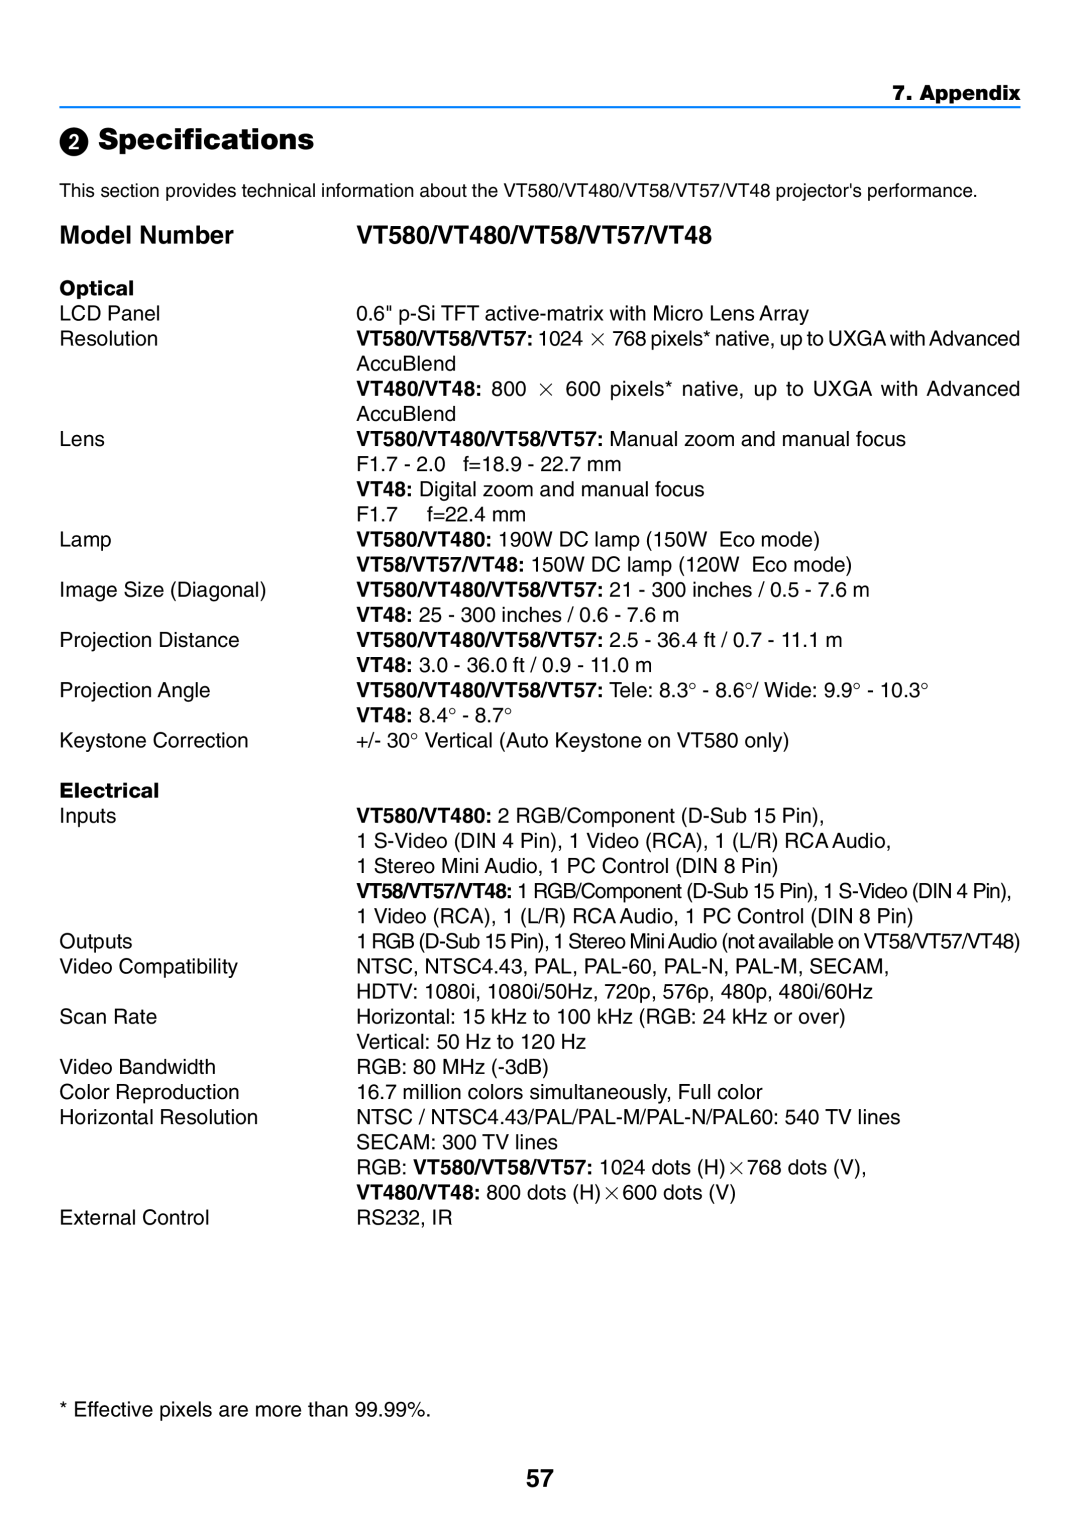 NEC manual Specifications, Model Number, VT580/VT480/VT58/VT57/VT48, Optical, Electrical, Appendix 